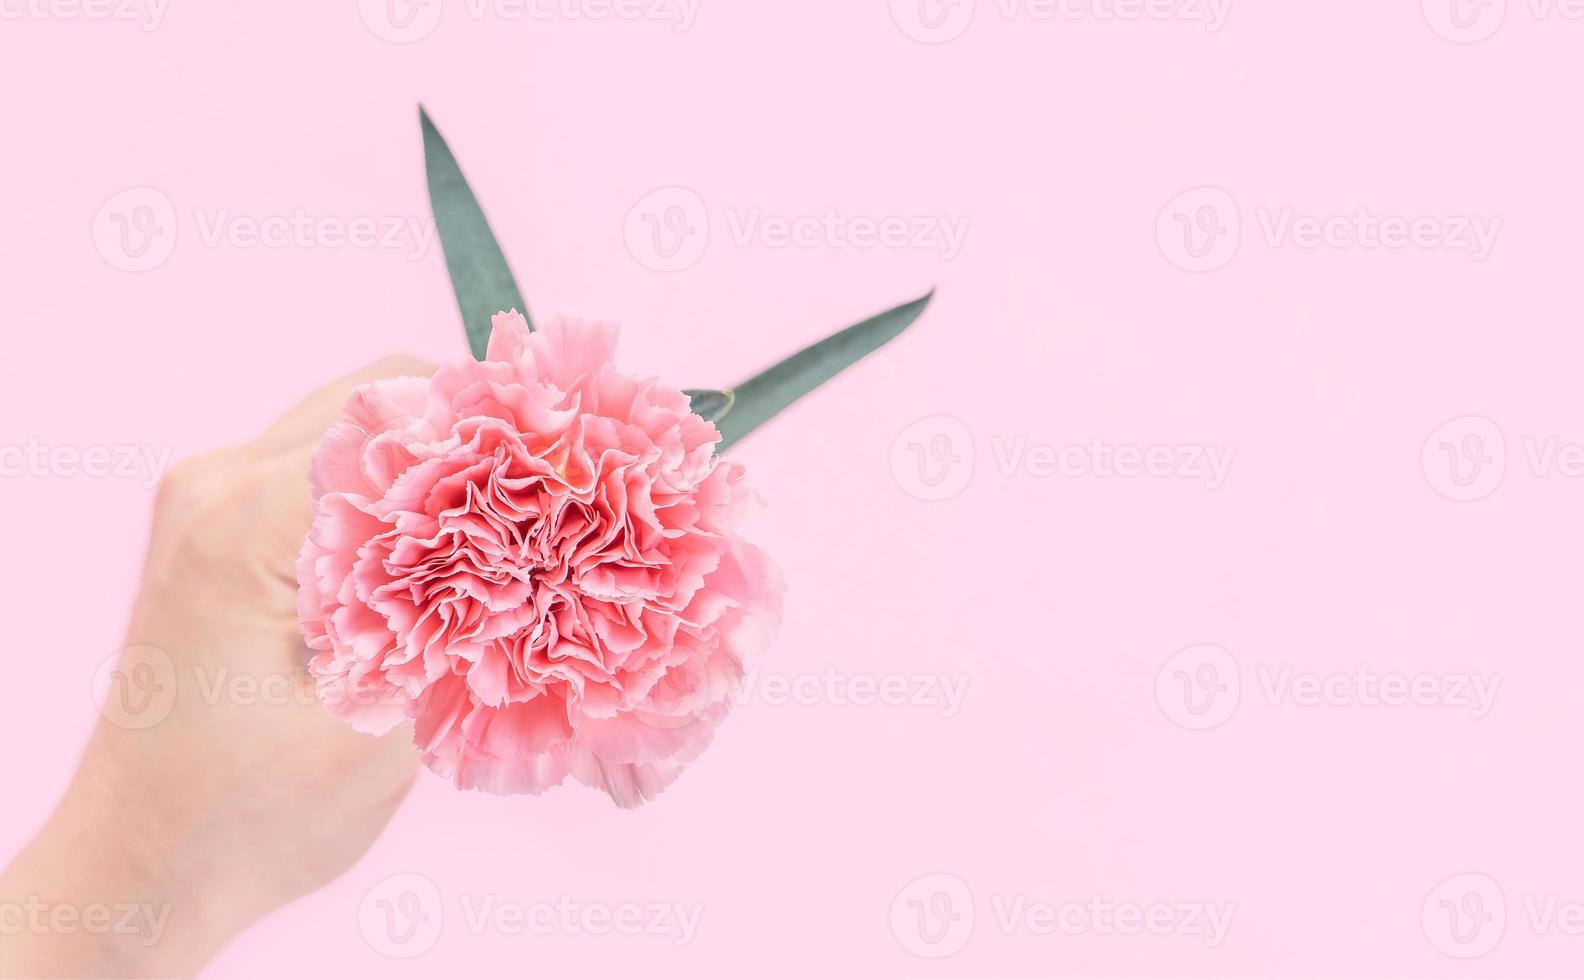 mujer dando una sola elegancia floreciente color rosa bebé clavel tierno aislado sobre fondo rosa brillante, concepto de diseño de saludo y decoración, vista superior, primer plano, espacio de copia foto